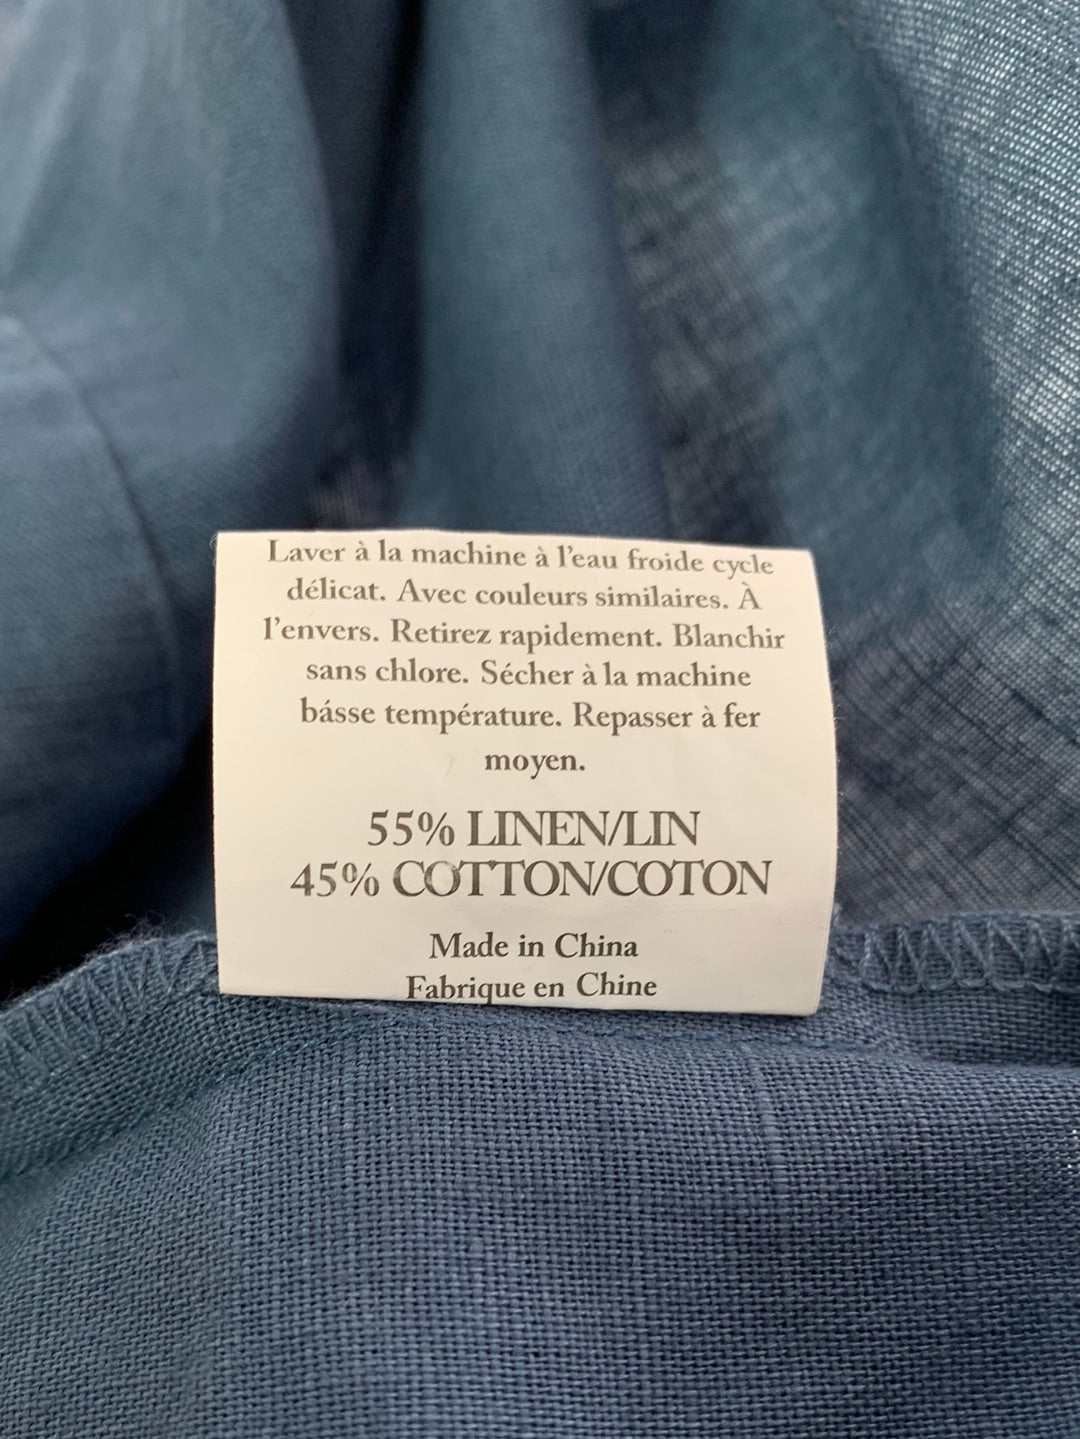 GRAE COVE blue Linen Cotton Button Up Short Sleeve Blouse - S